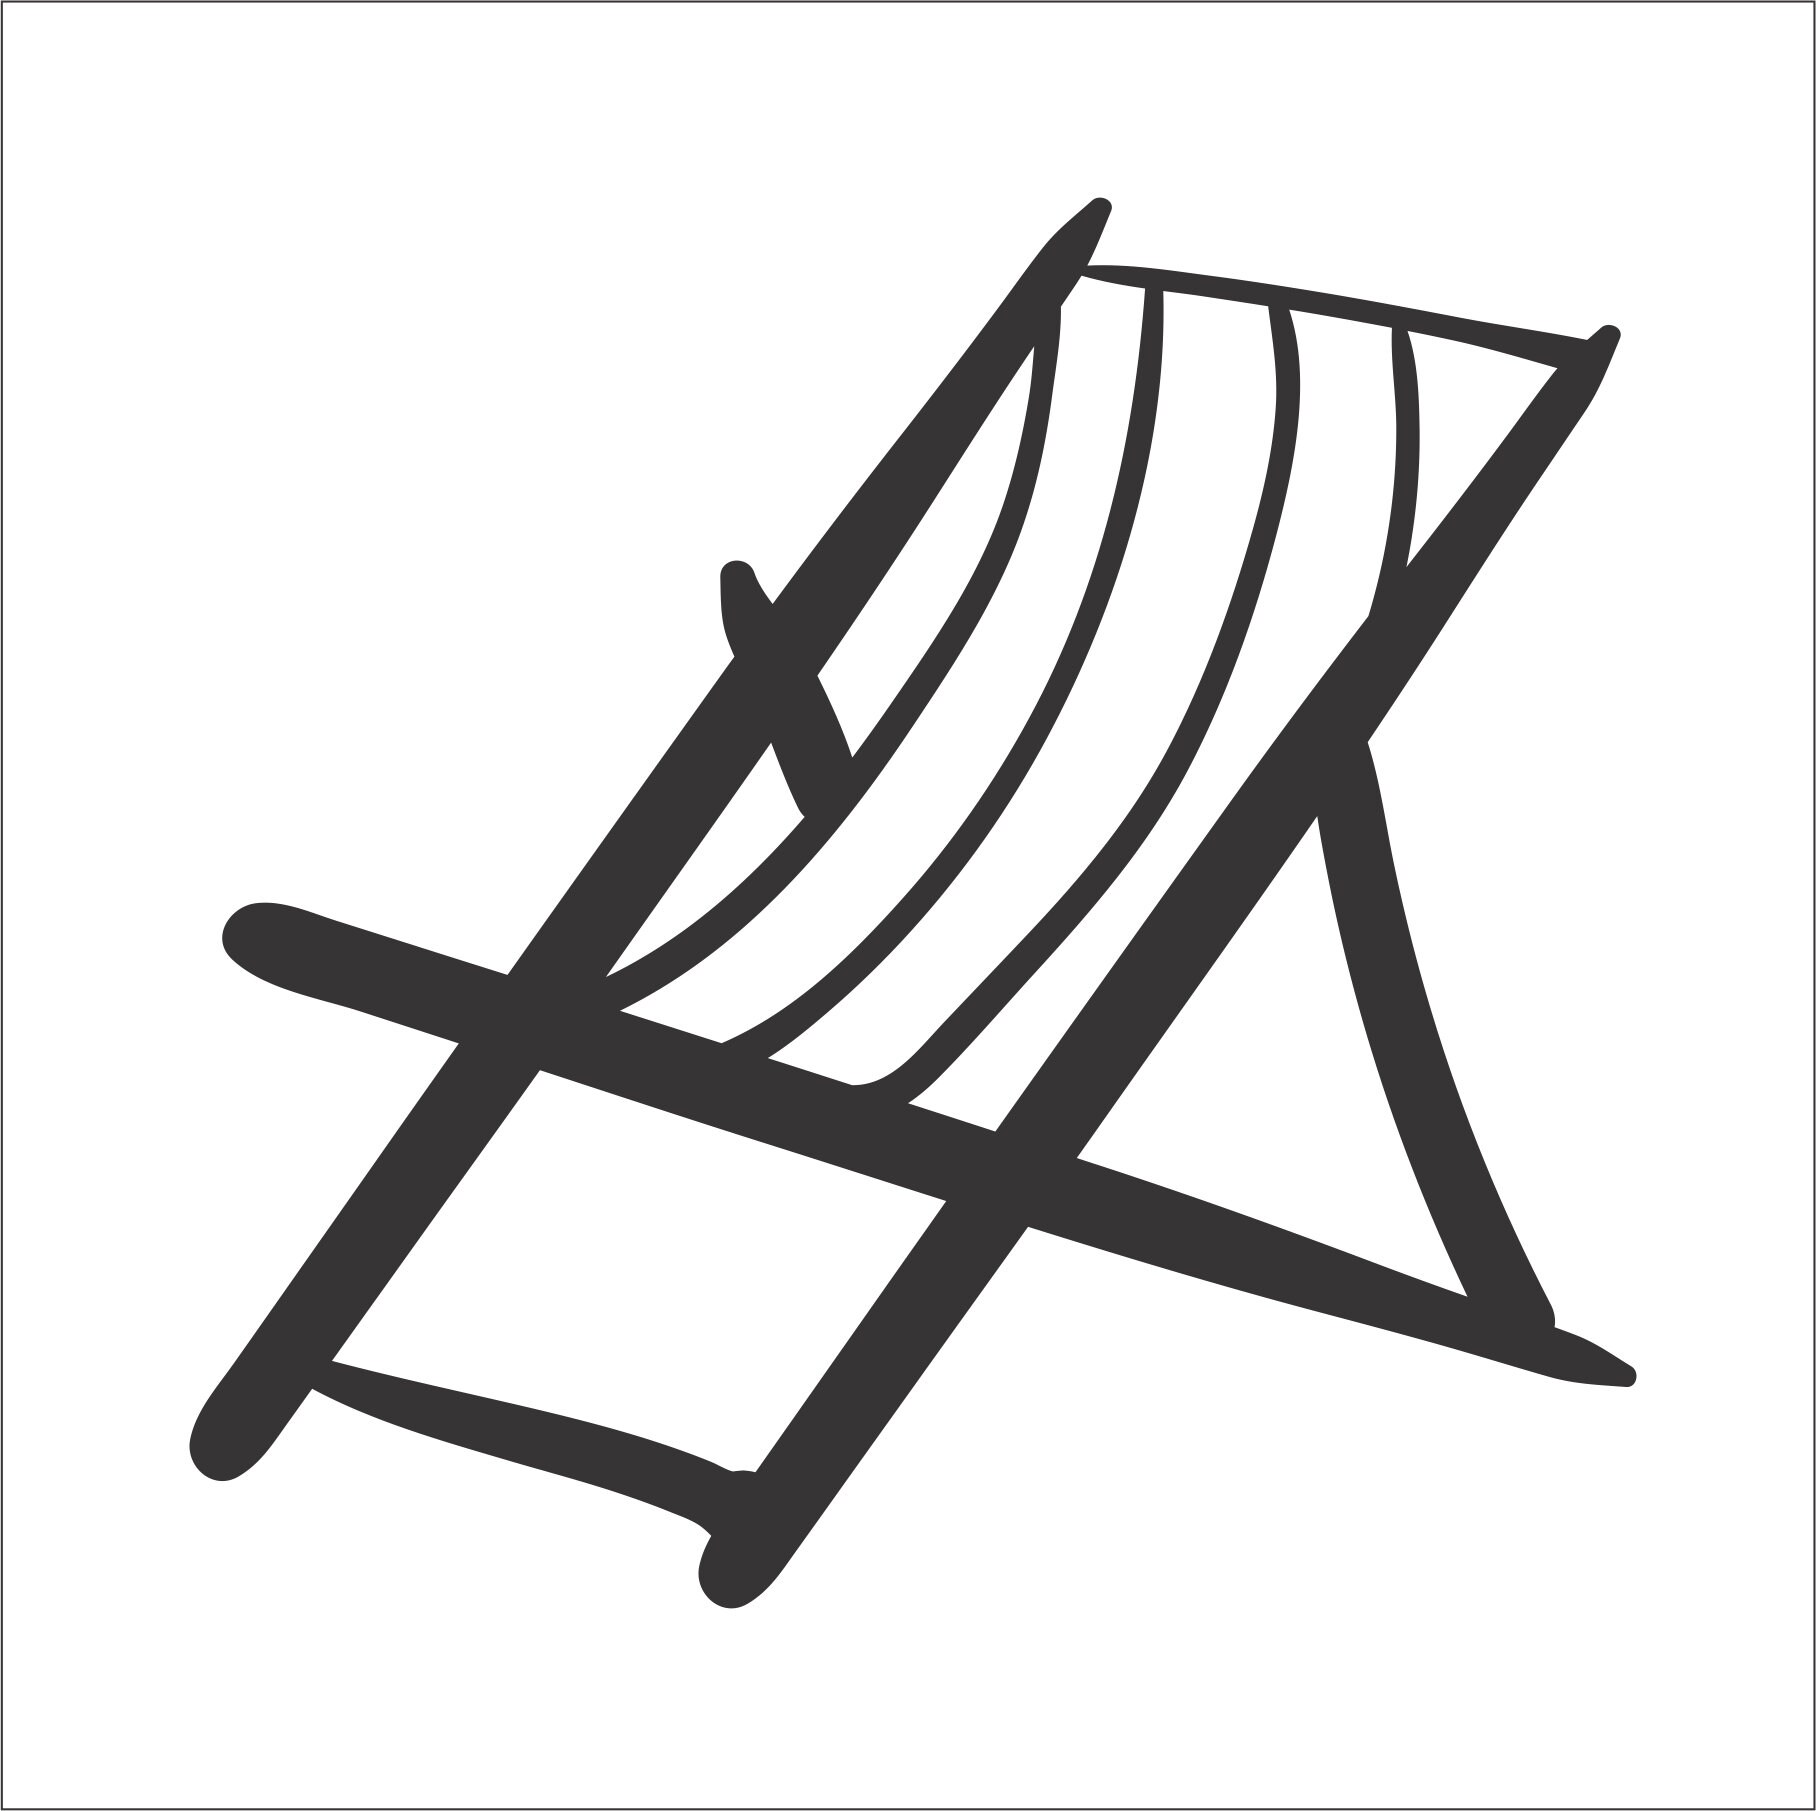 2 beach chair clipart